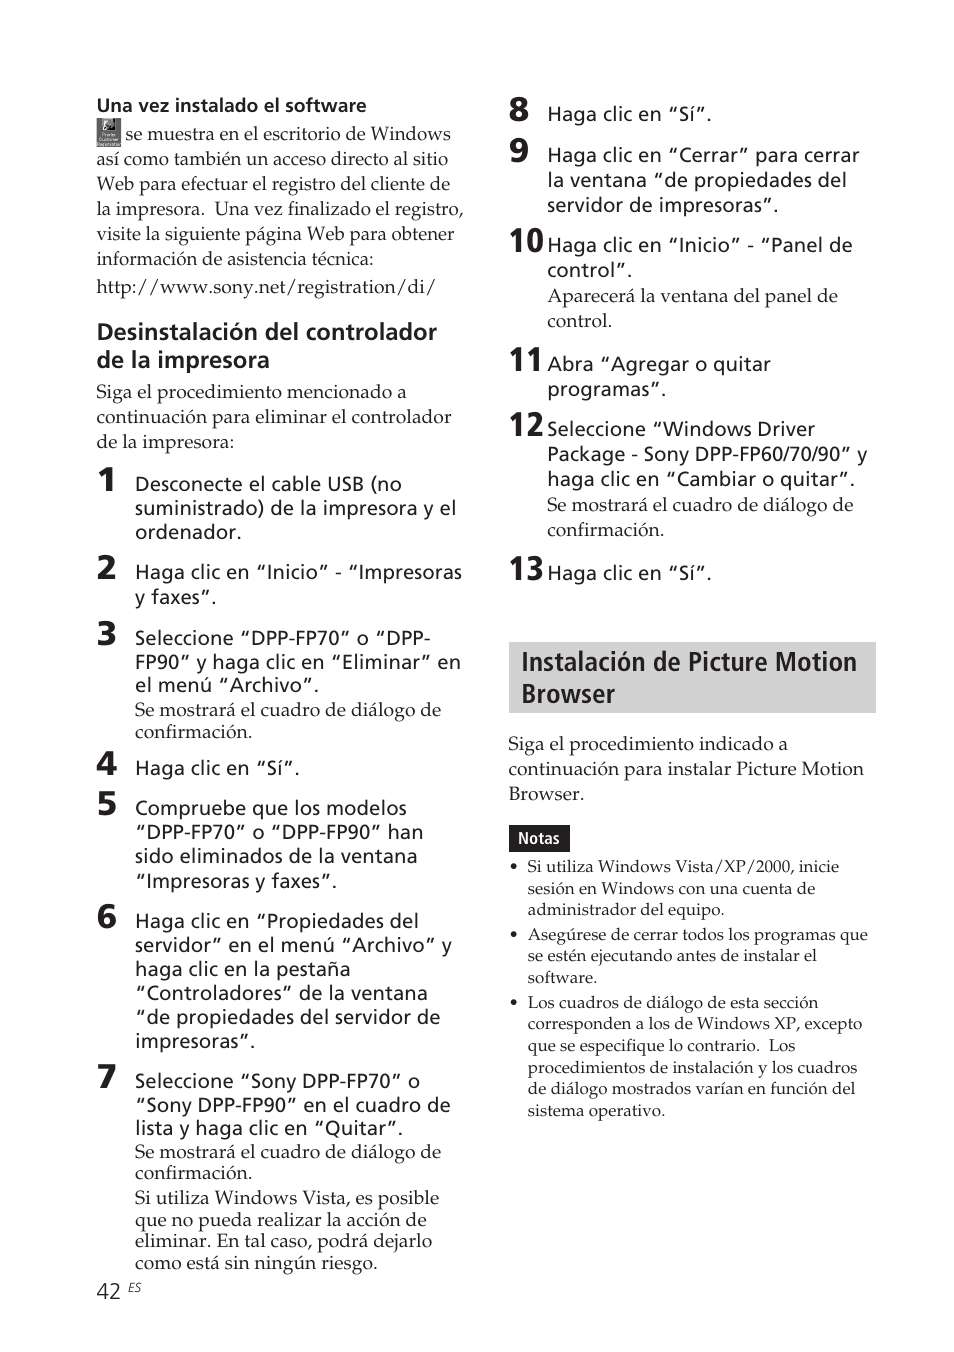 Instalación de picture motion browser | Sony DPP-FP70 Manual del usuario | Página 42 / 84